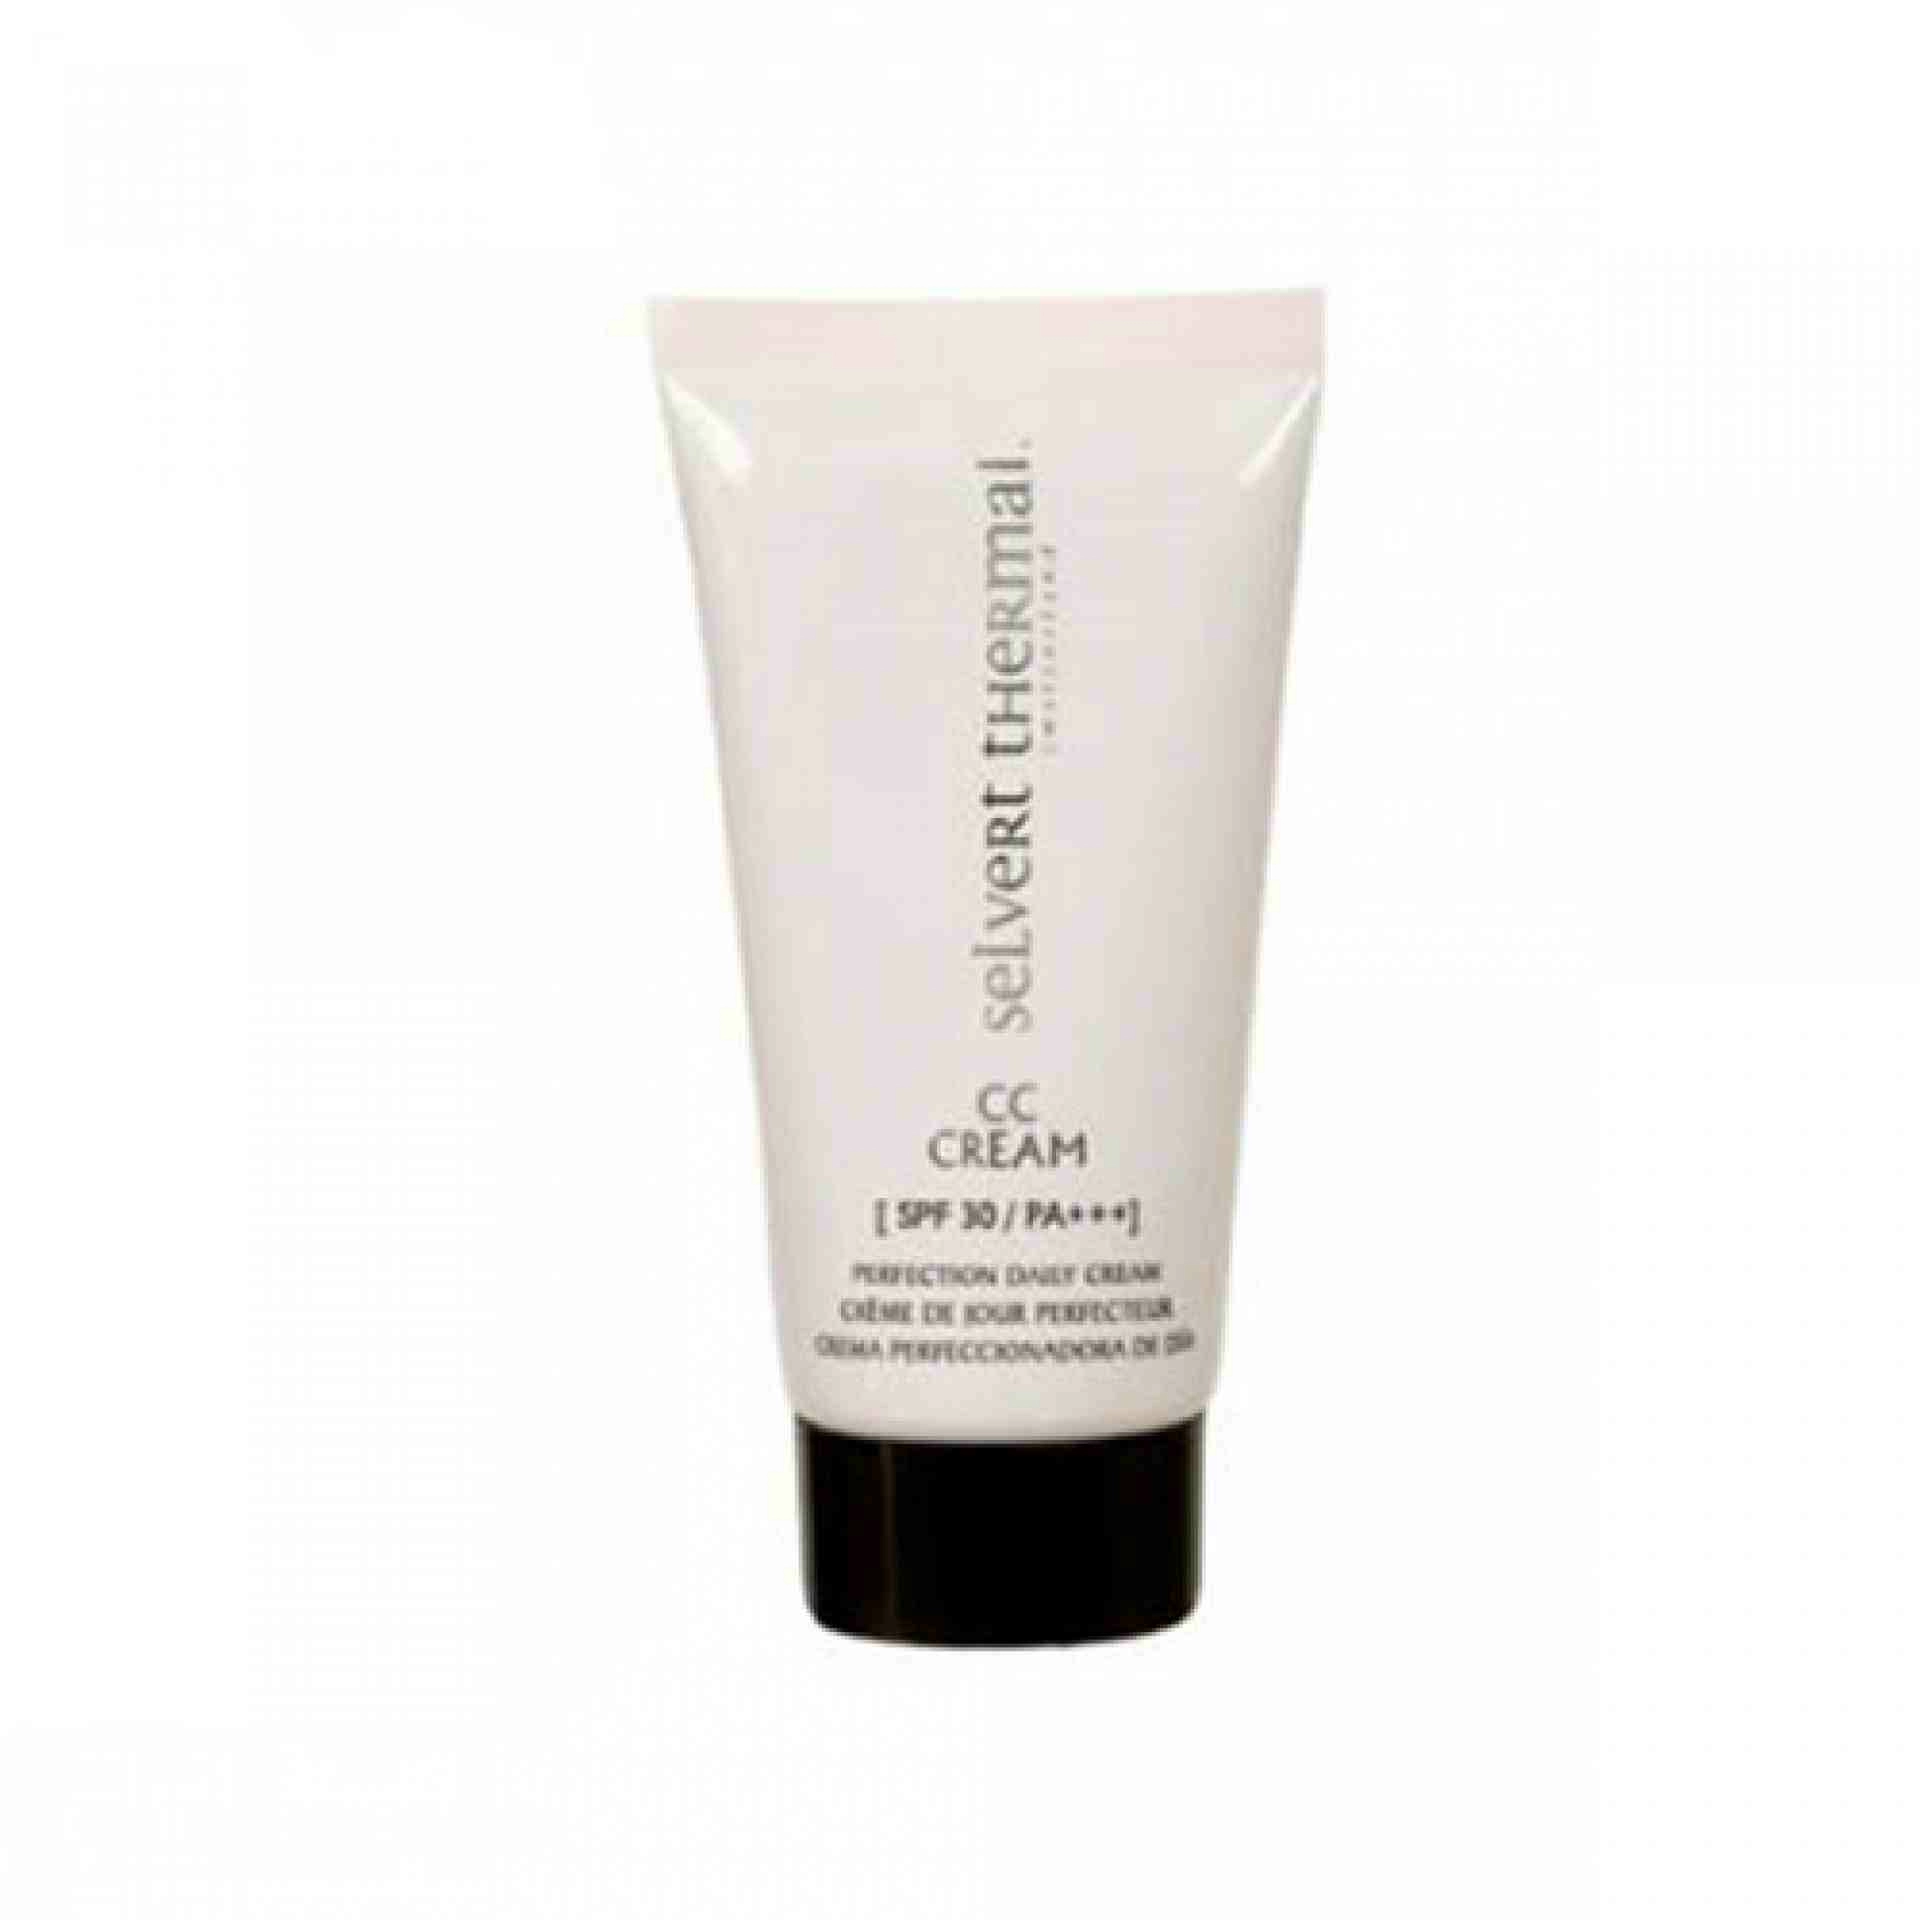 CC Cream SPF30 | Crema facial 50ml - Selvert Thermal ®